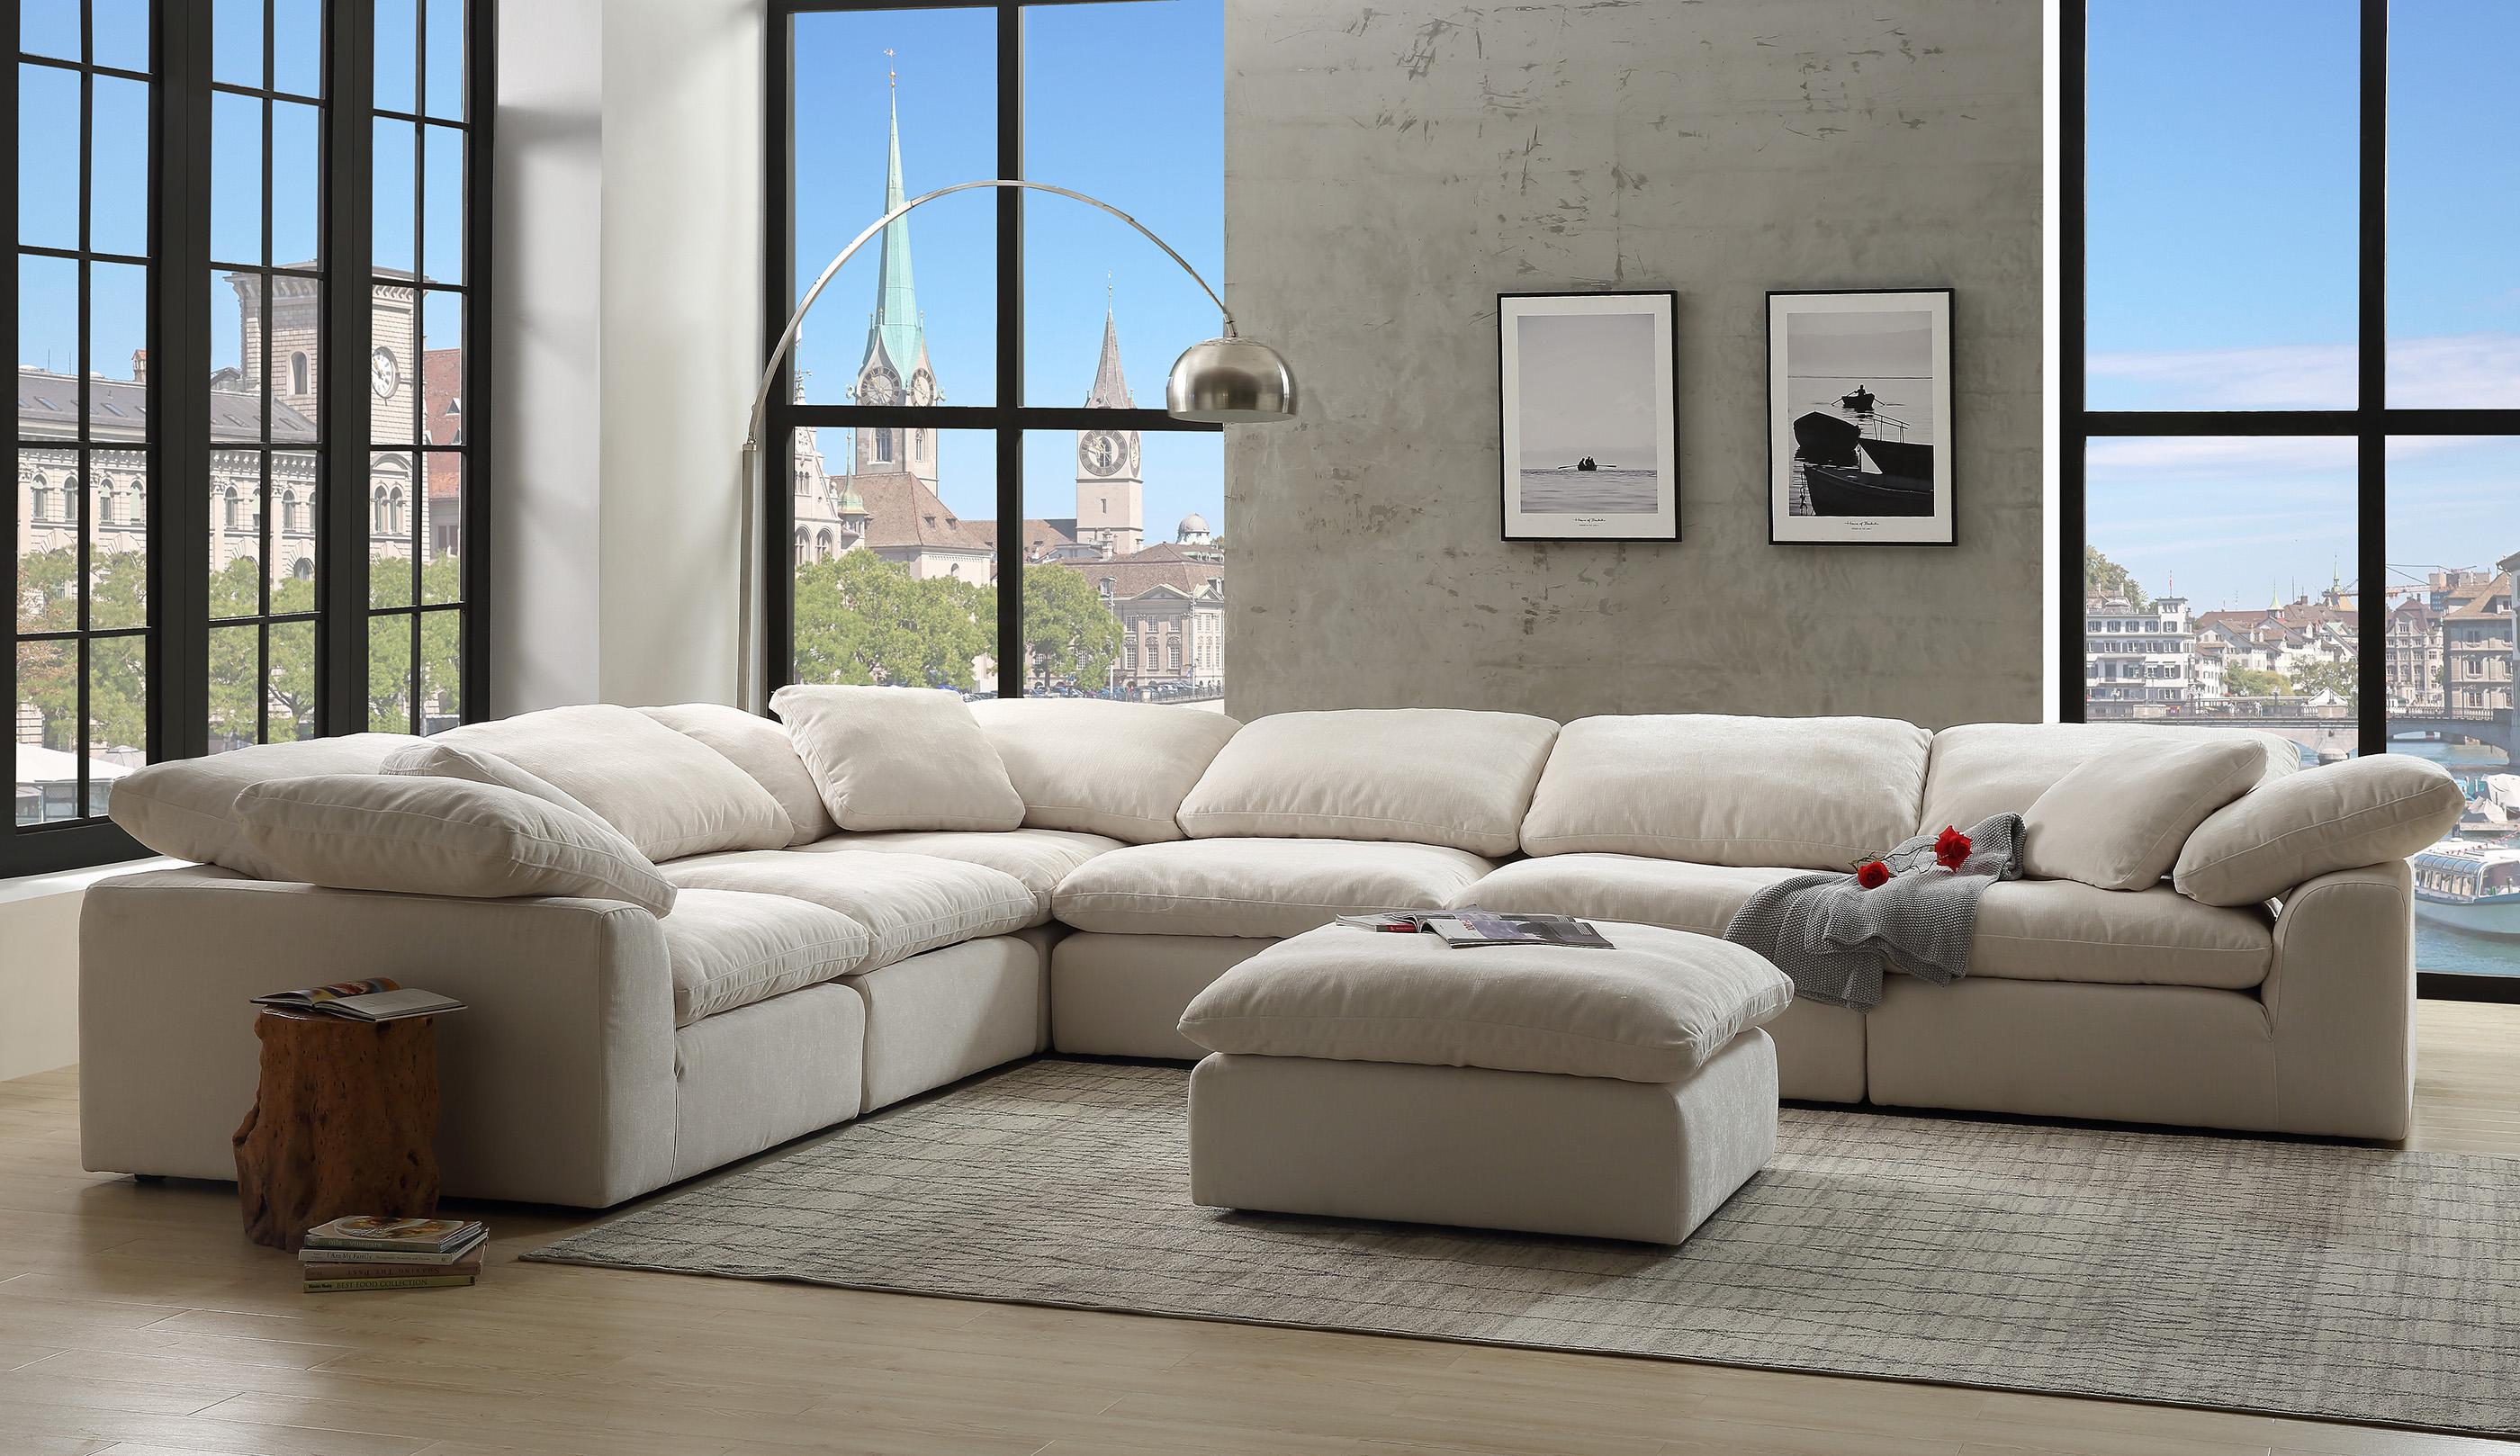 Acme Furniture Naveen Modular Sectional Sofa